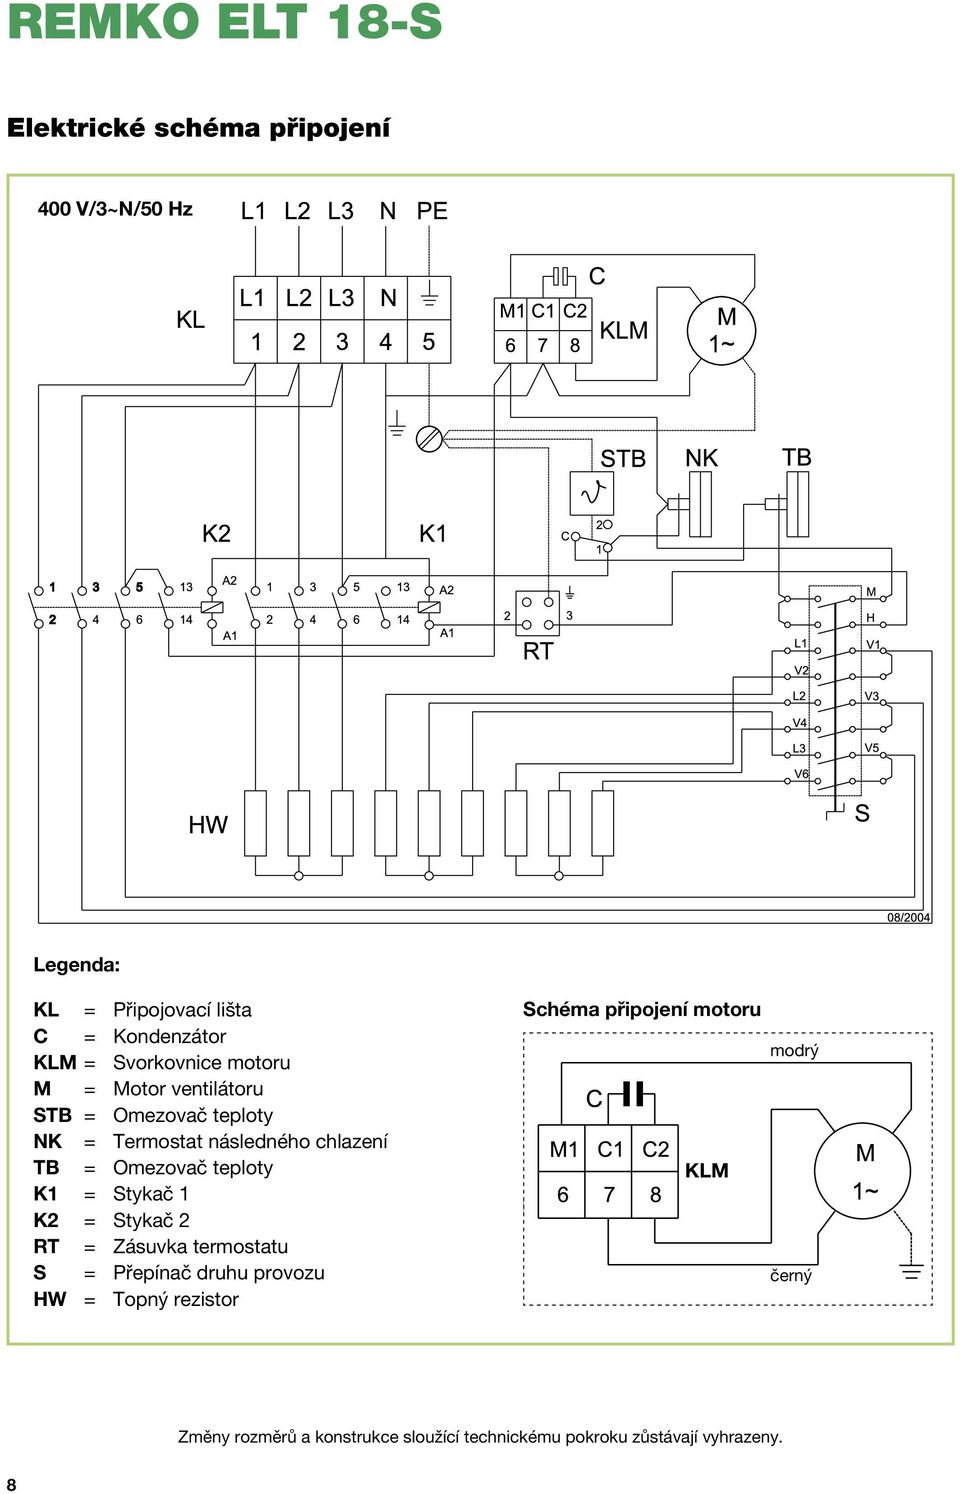 teploty K1 = Stykač 1 K2 = Stykač 2 RT = Zásuvka termostatu S = Přepínač druhu provozu HW = Topný rezistor